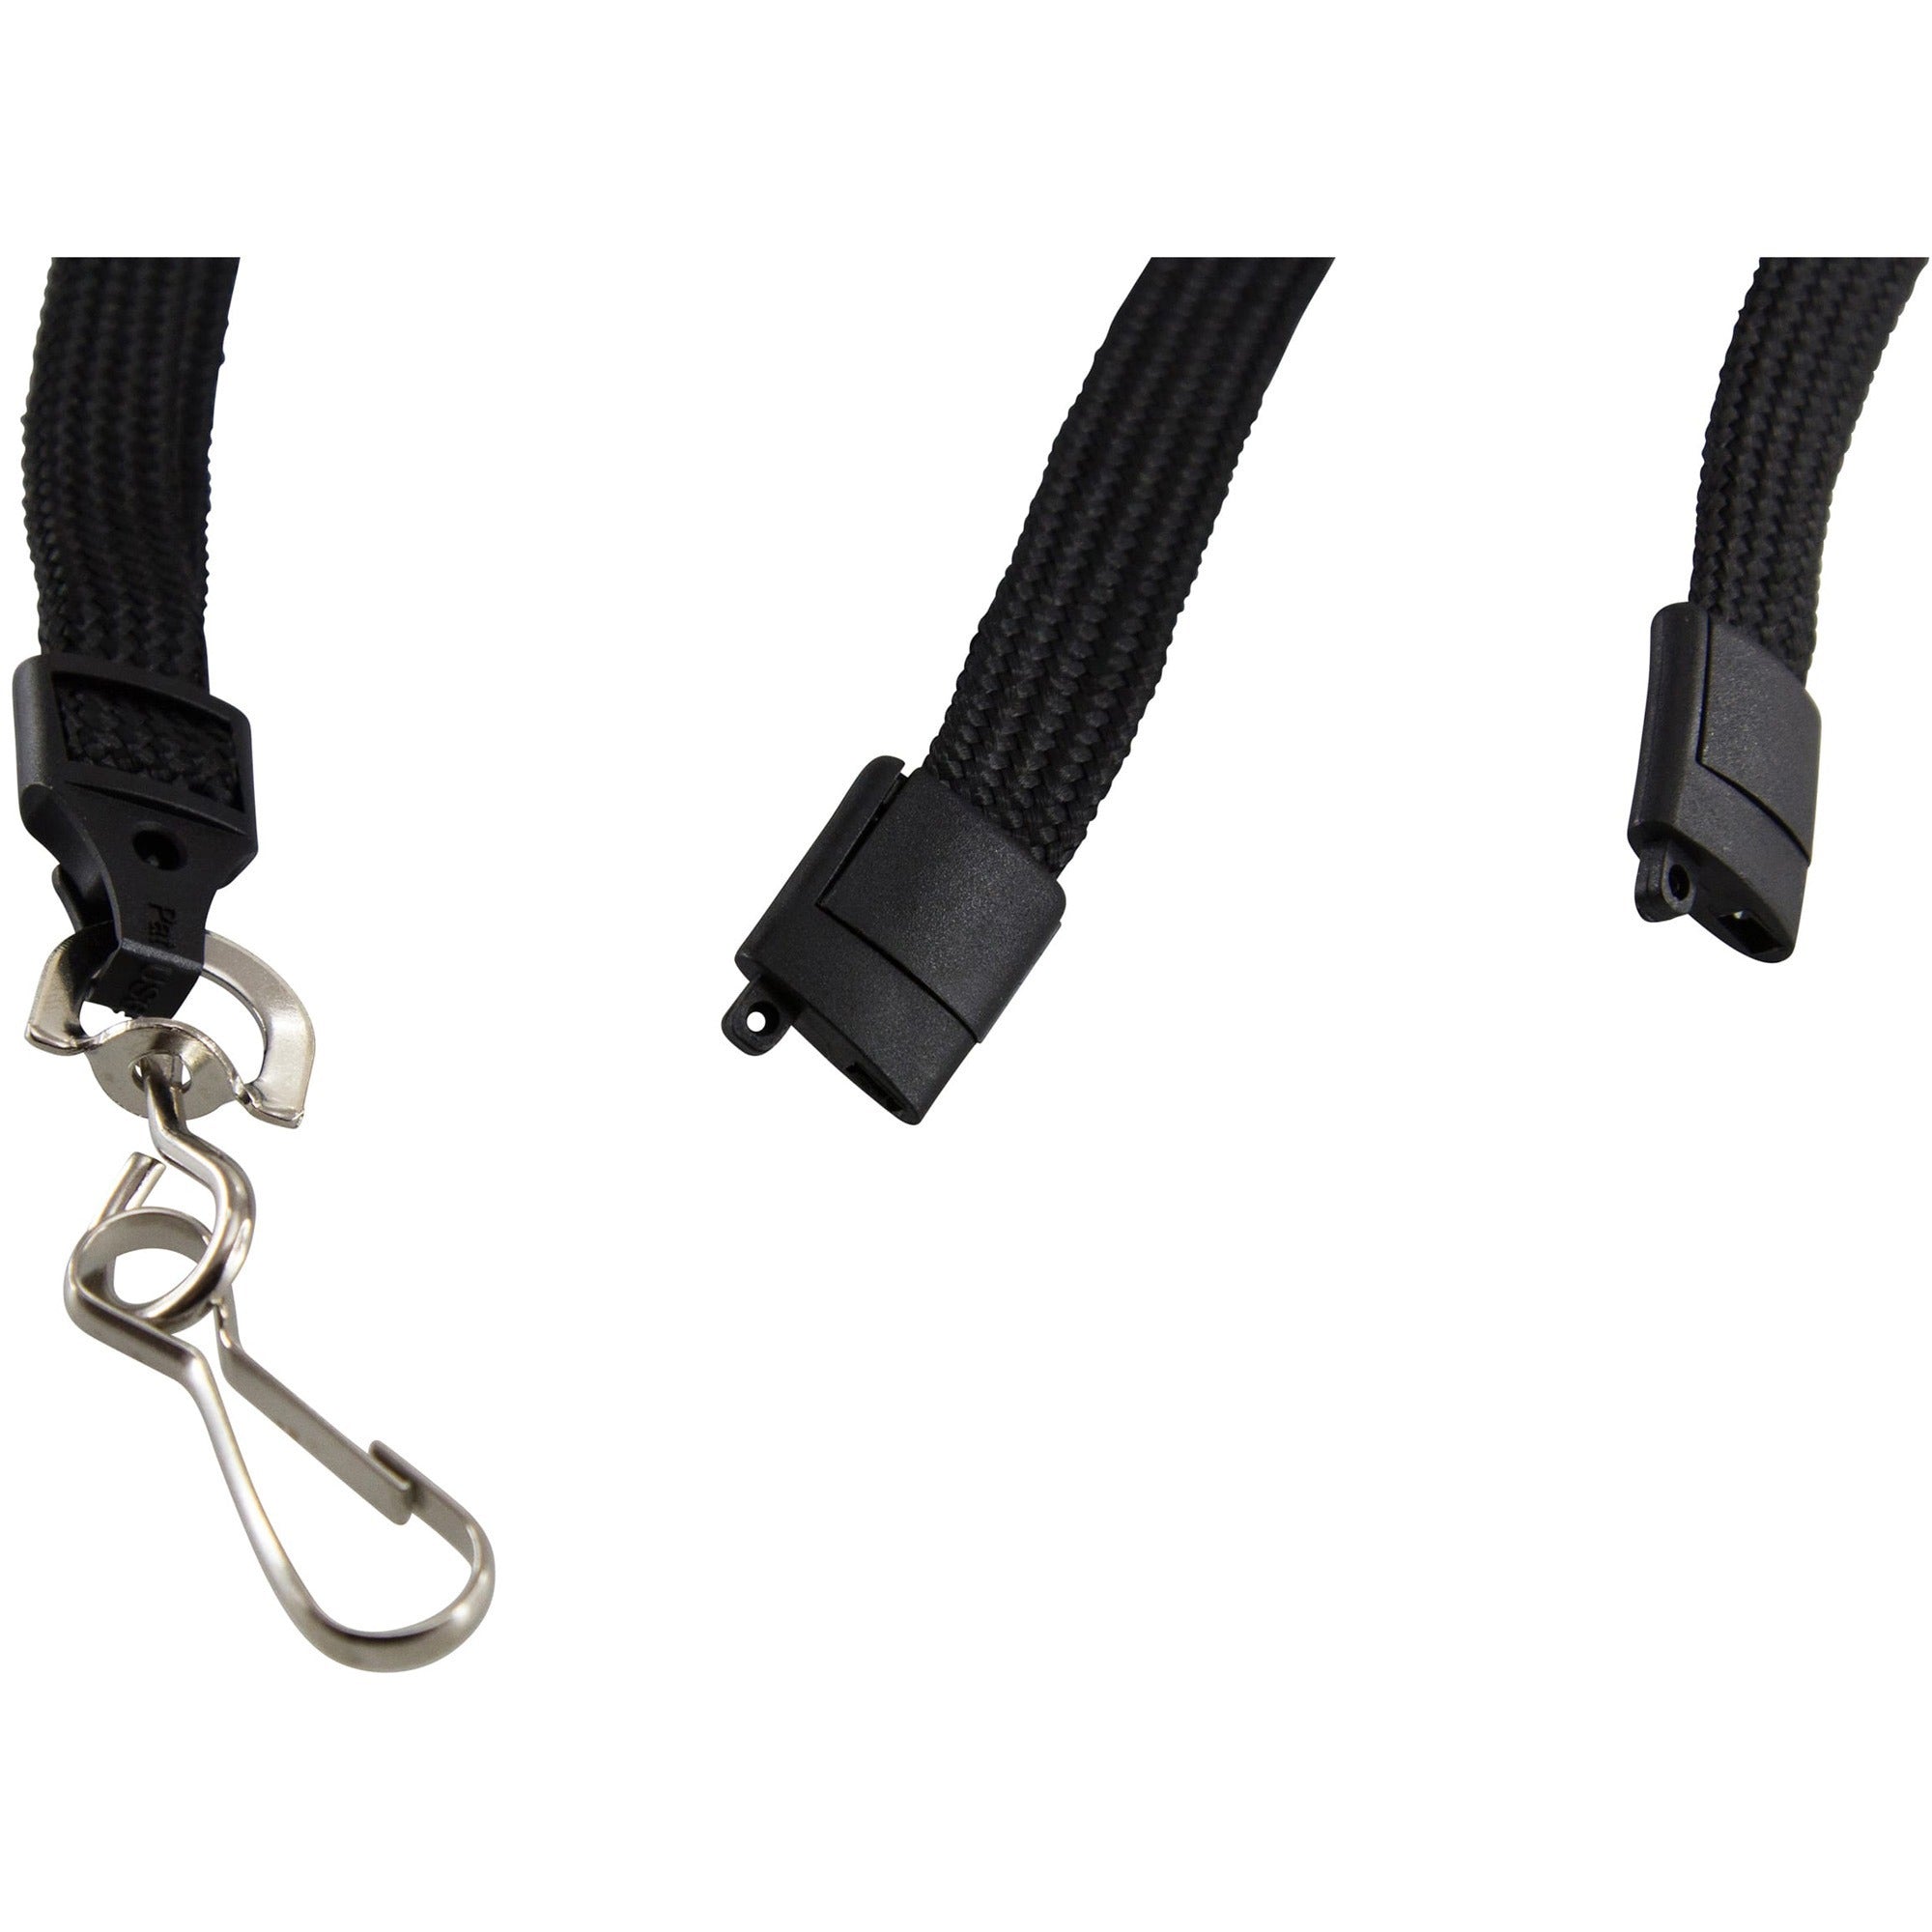 SICURIX Plastic Hook Breakaway Lanyard - 12 / Pack - 36" Length - Black - Nylon, Plastic, Steel - 